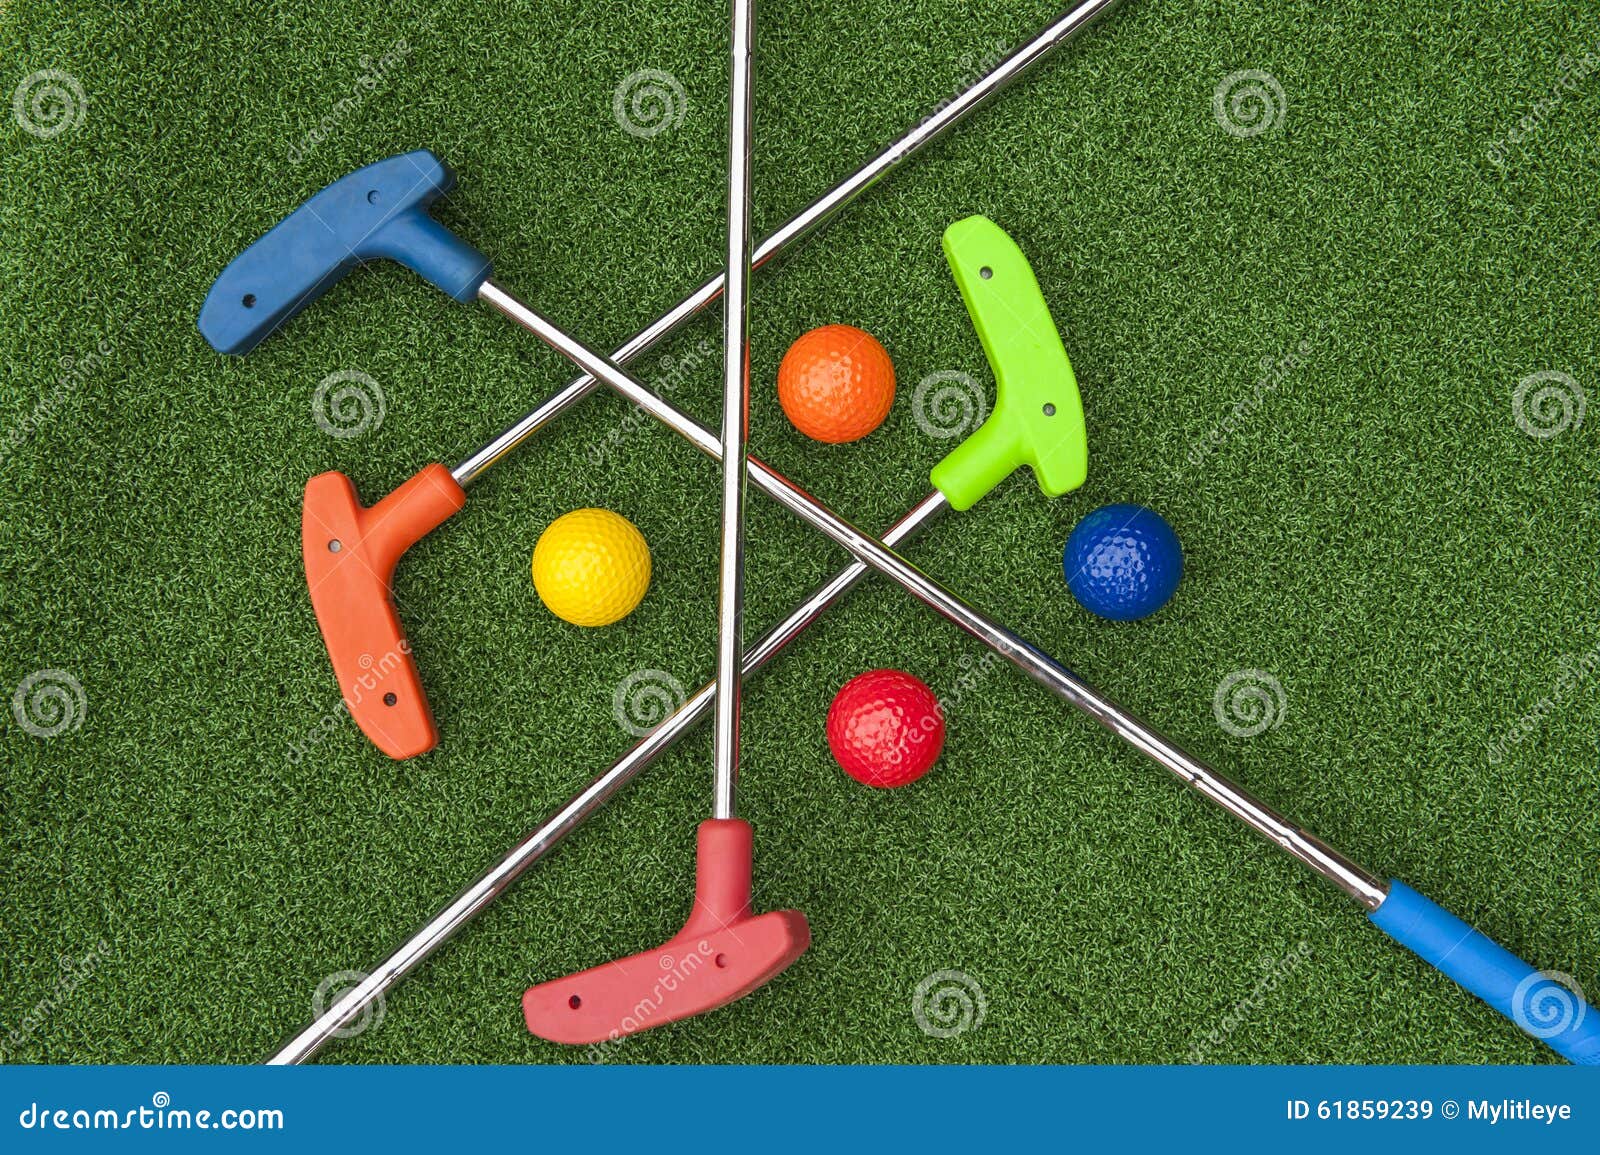 Quatro Mini Golf Putters e bolas. Quatro mini embocadores do golfe e bolas das cores sortidos que colocam criss cruzaram-se na grama artificial